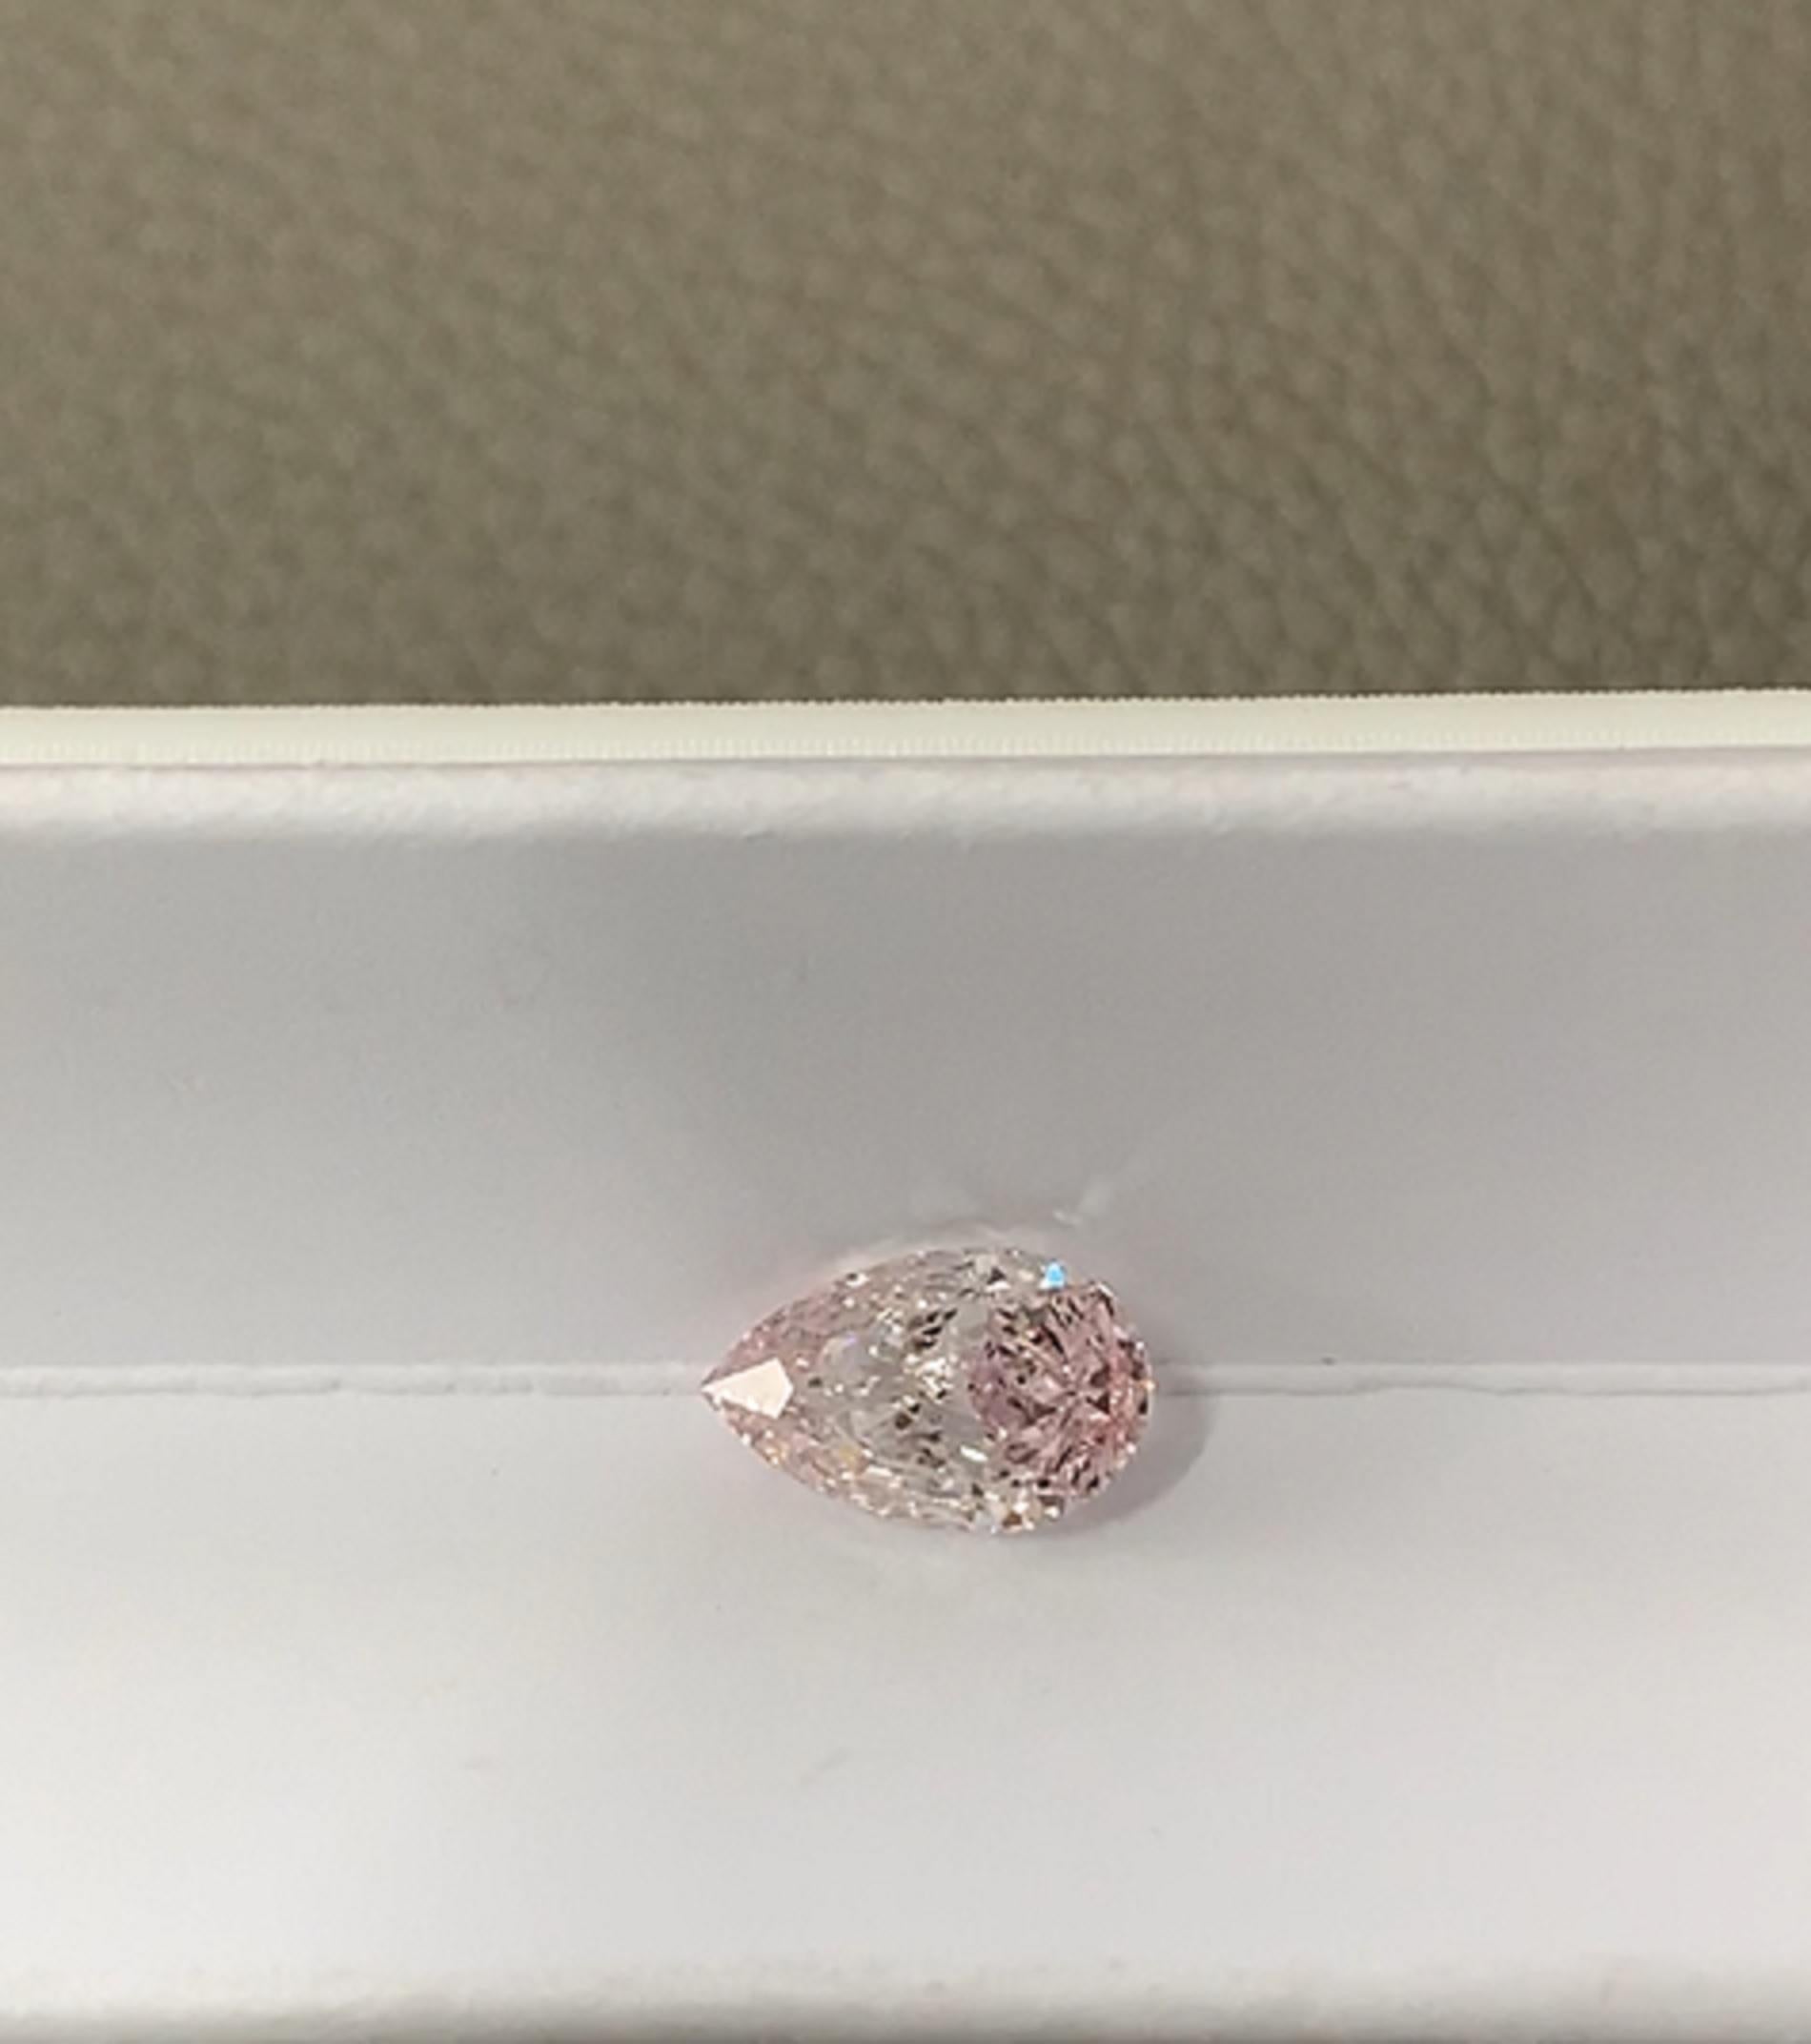 Un magnifique diamant de 4.98 carats certifié par la GIA. 
fantaisie rose orangé
vs2 clarté

